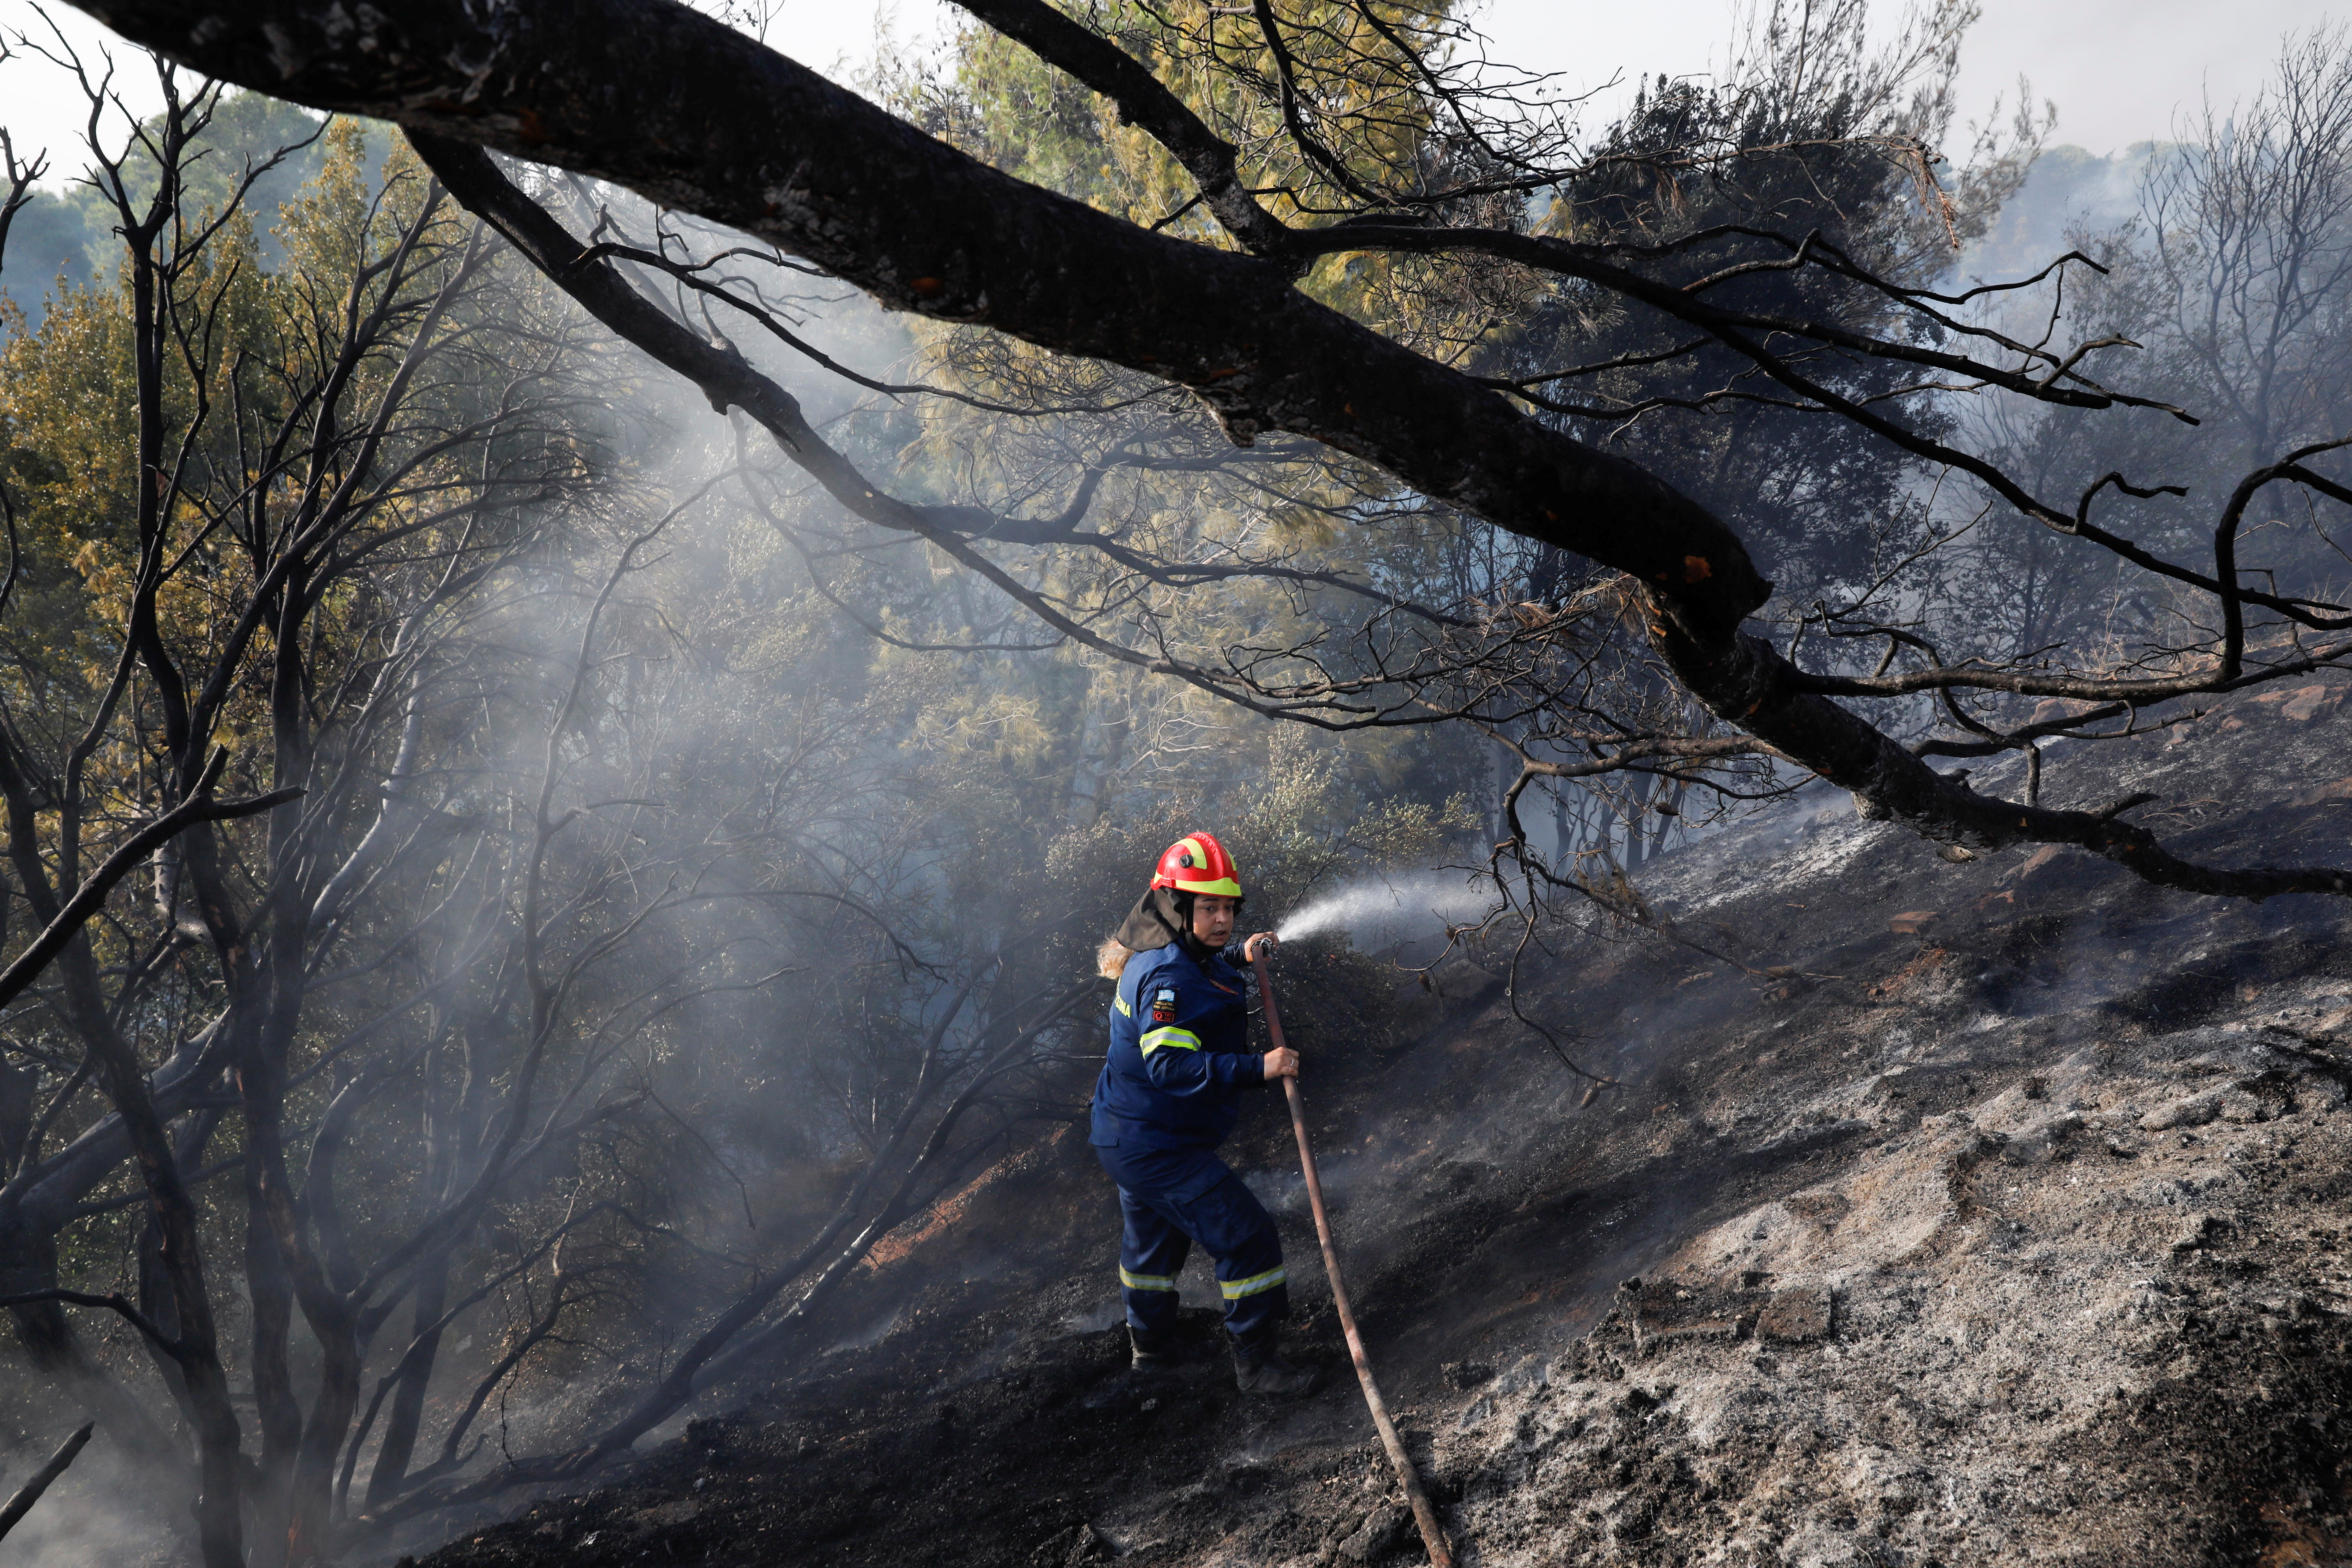 4 年 2021 月 XNUMX 日，一名消防员在希腊雅典以北的 Varympompi 郊区喷水以帮助扑灭野火。REUTERS/Costas Baltas